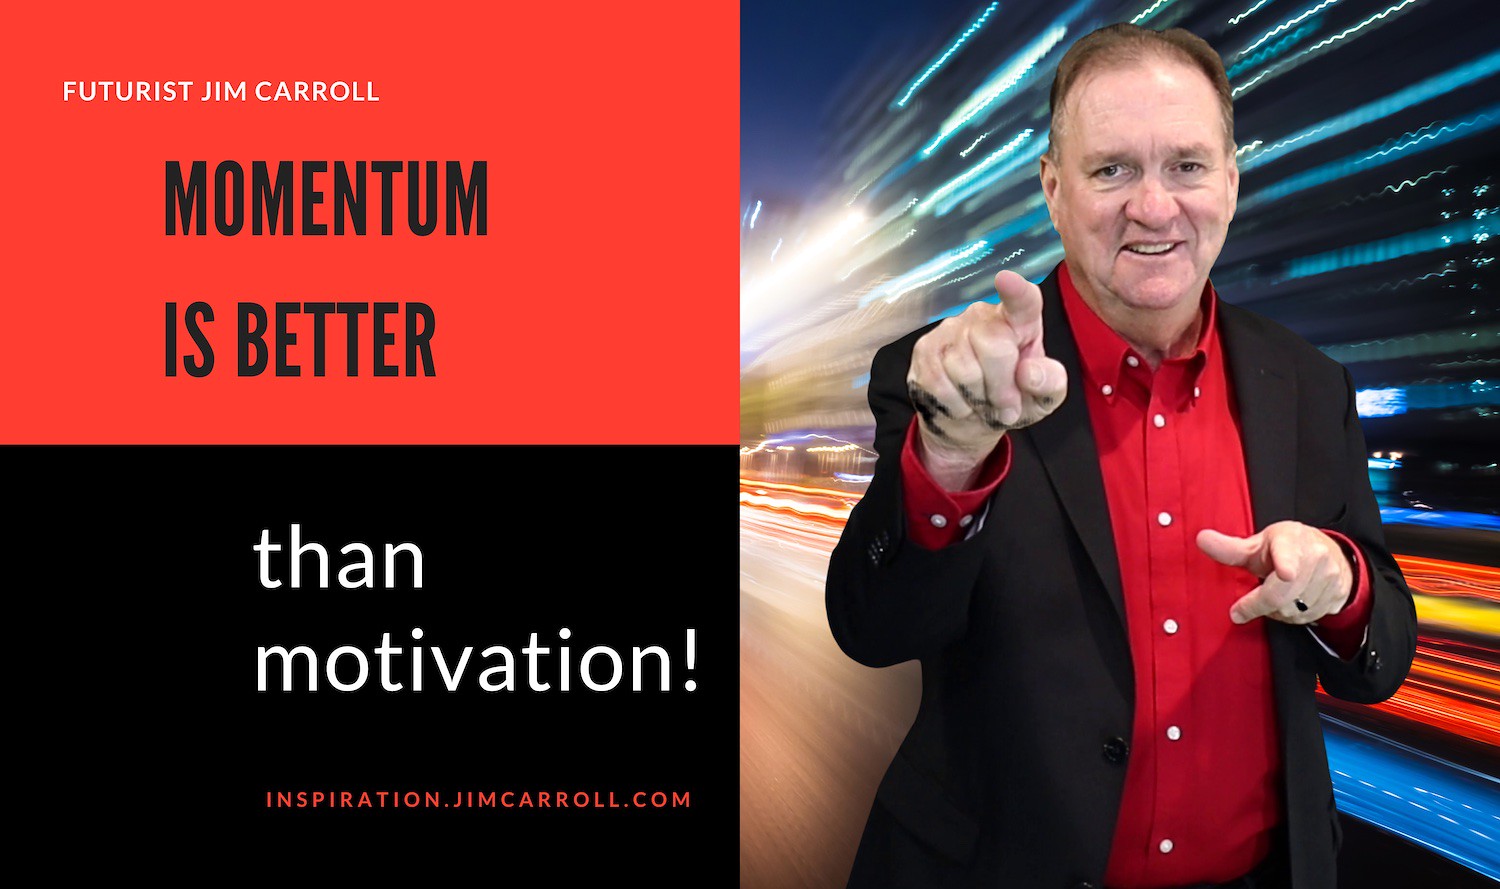 "Momentum is better than motivation!" - Futurist Jim Carroll